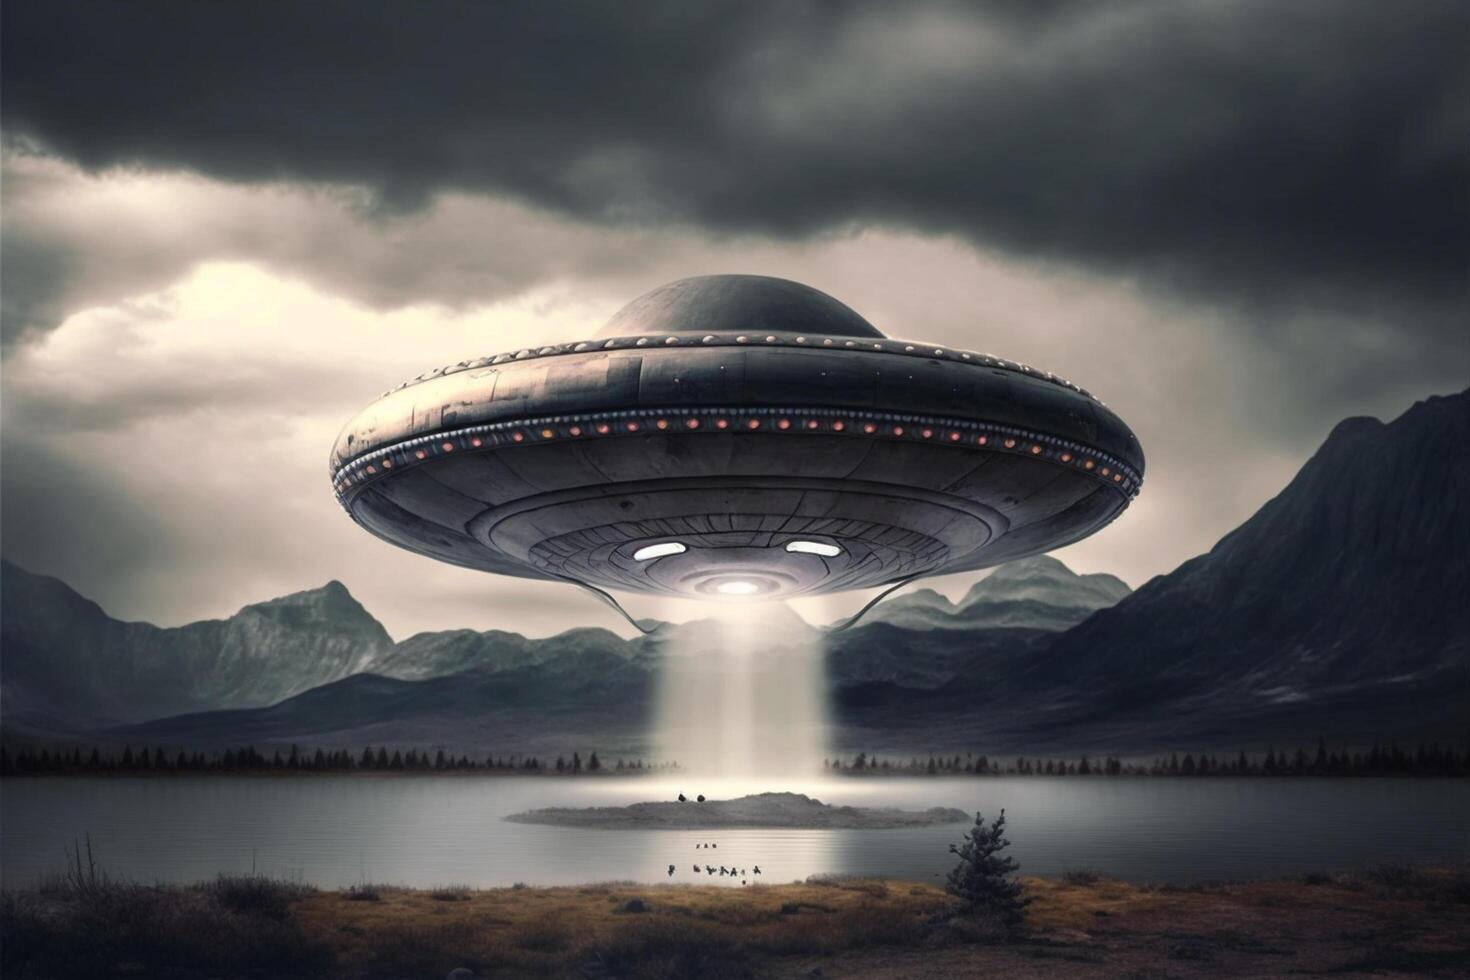 OVNI un extraterrestre soucoupe planant au dessus le champ dans le des nuages ai généré photo